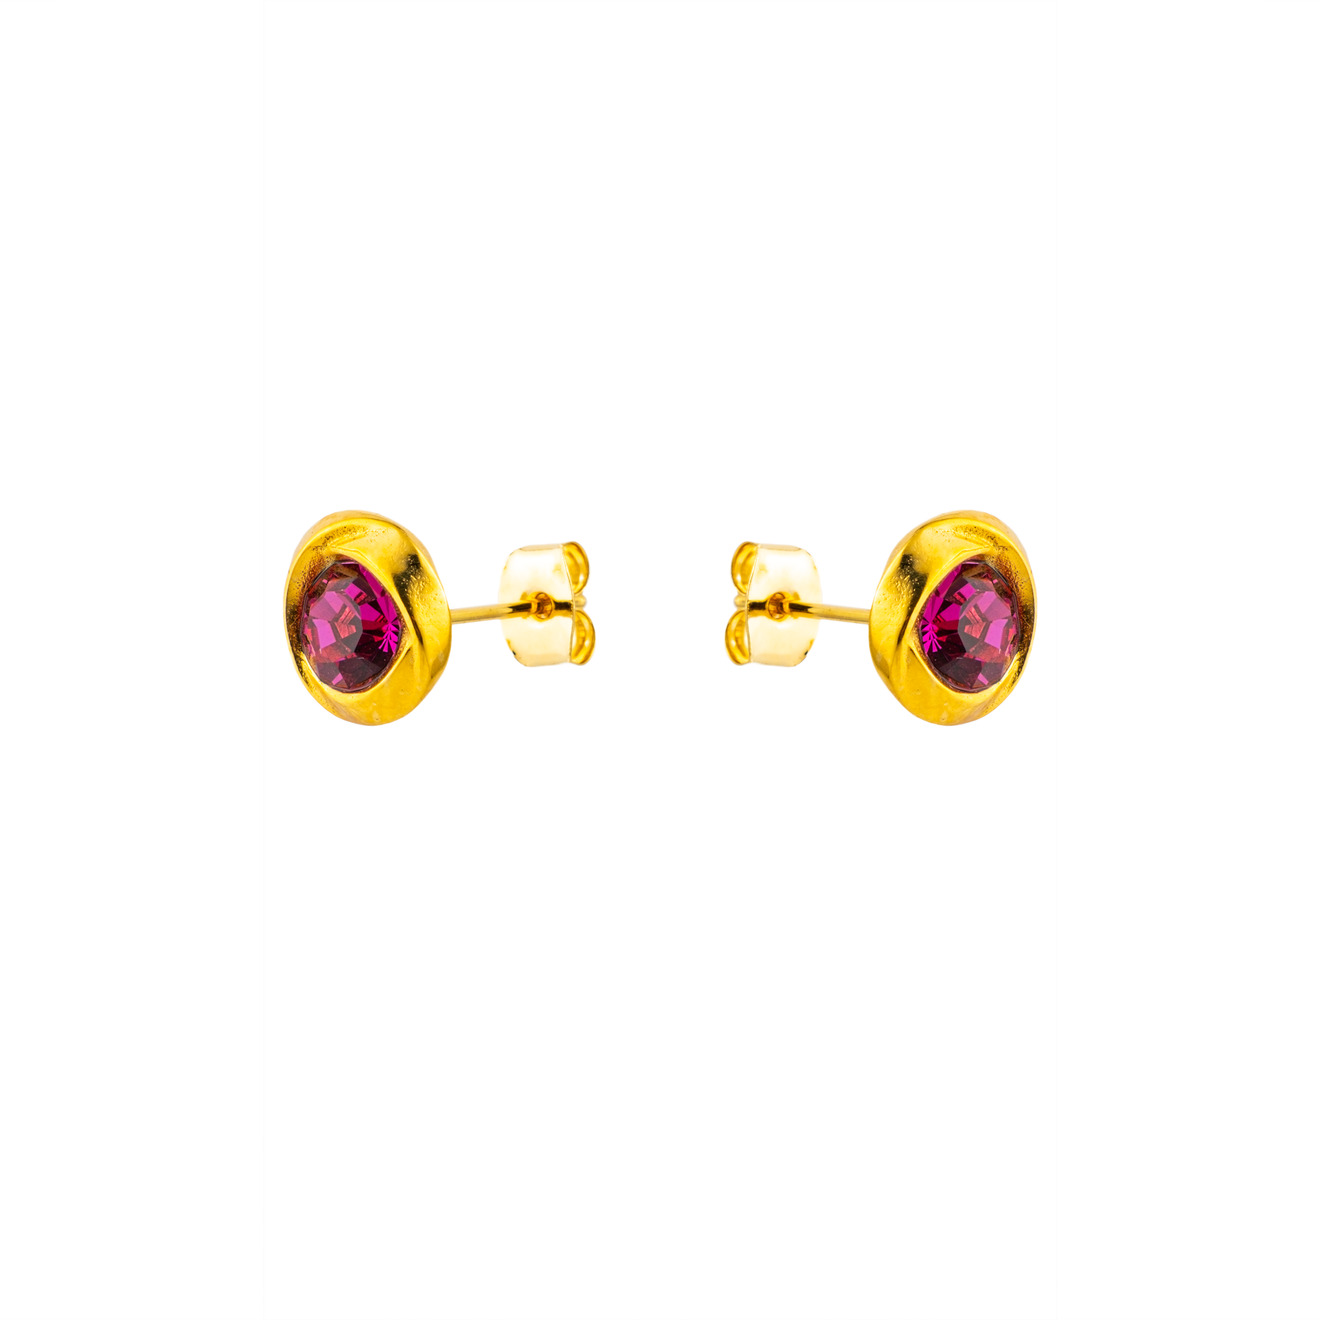 sonia rykiel позолоченные серьги с подвесками сердцами и разноцветной эмалью SONIA RYKIEL Золотостые серьги пусеты с розовым кристаллом